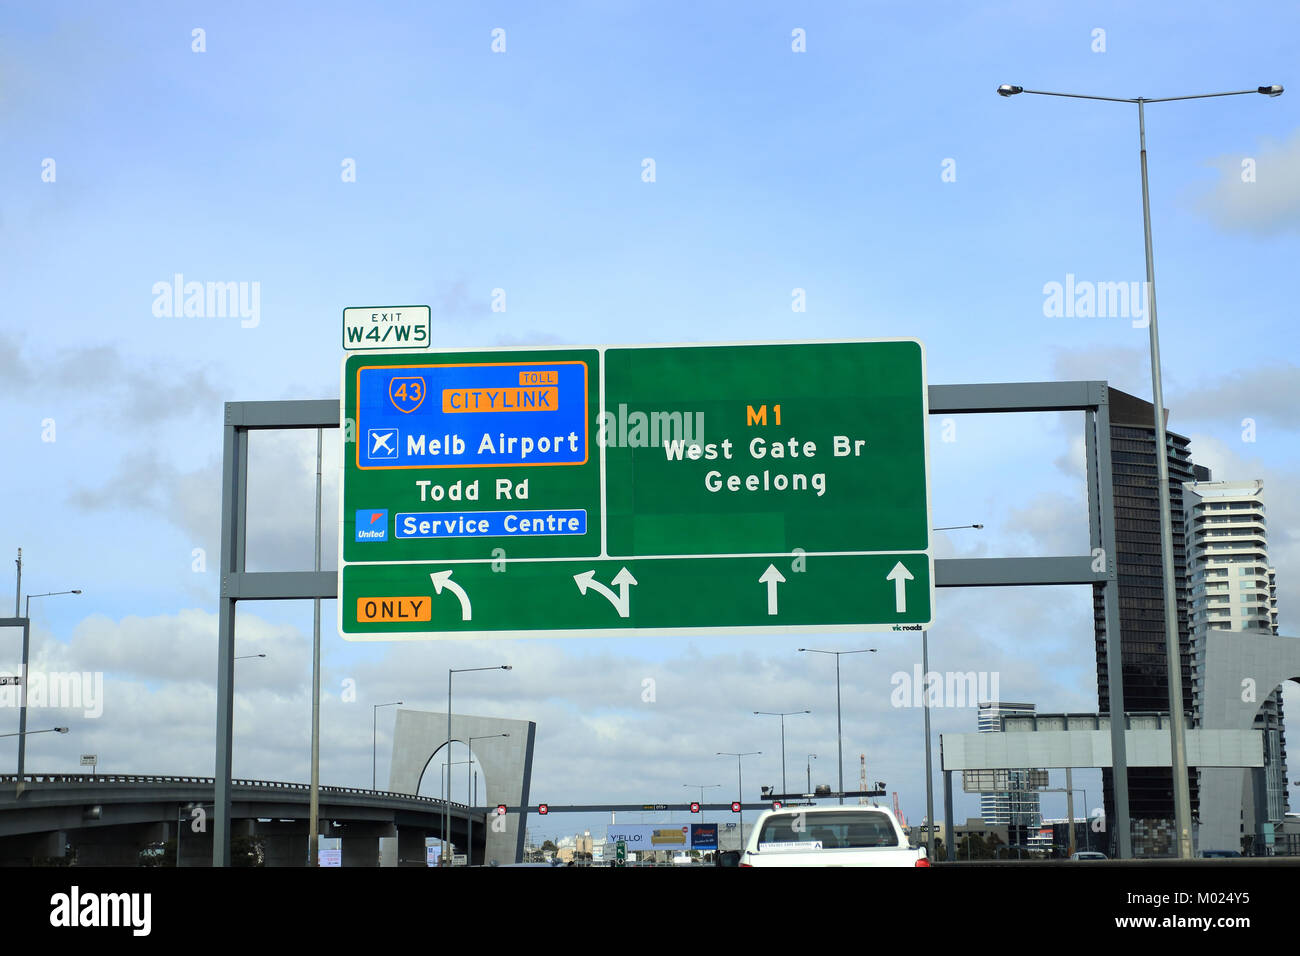 Road Sign Boards zum Flughafen Melbourne, Geelong, West Gate Bridge und Todd Road in Melbourne Freeway Victoria Australien Stockfoto